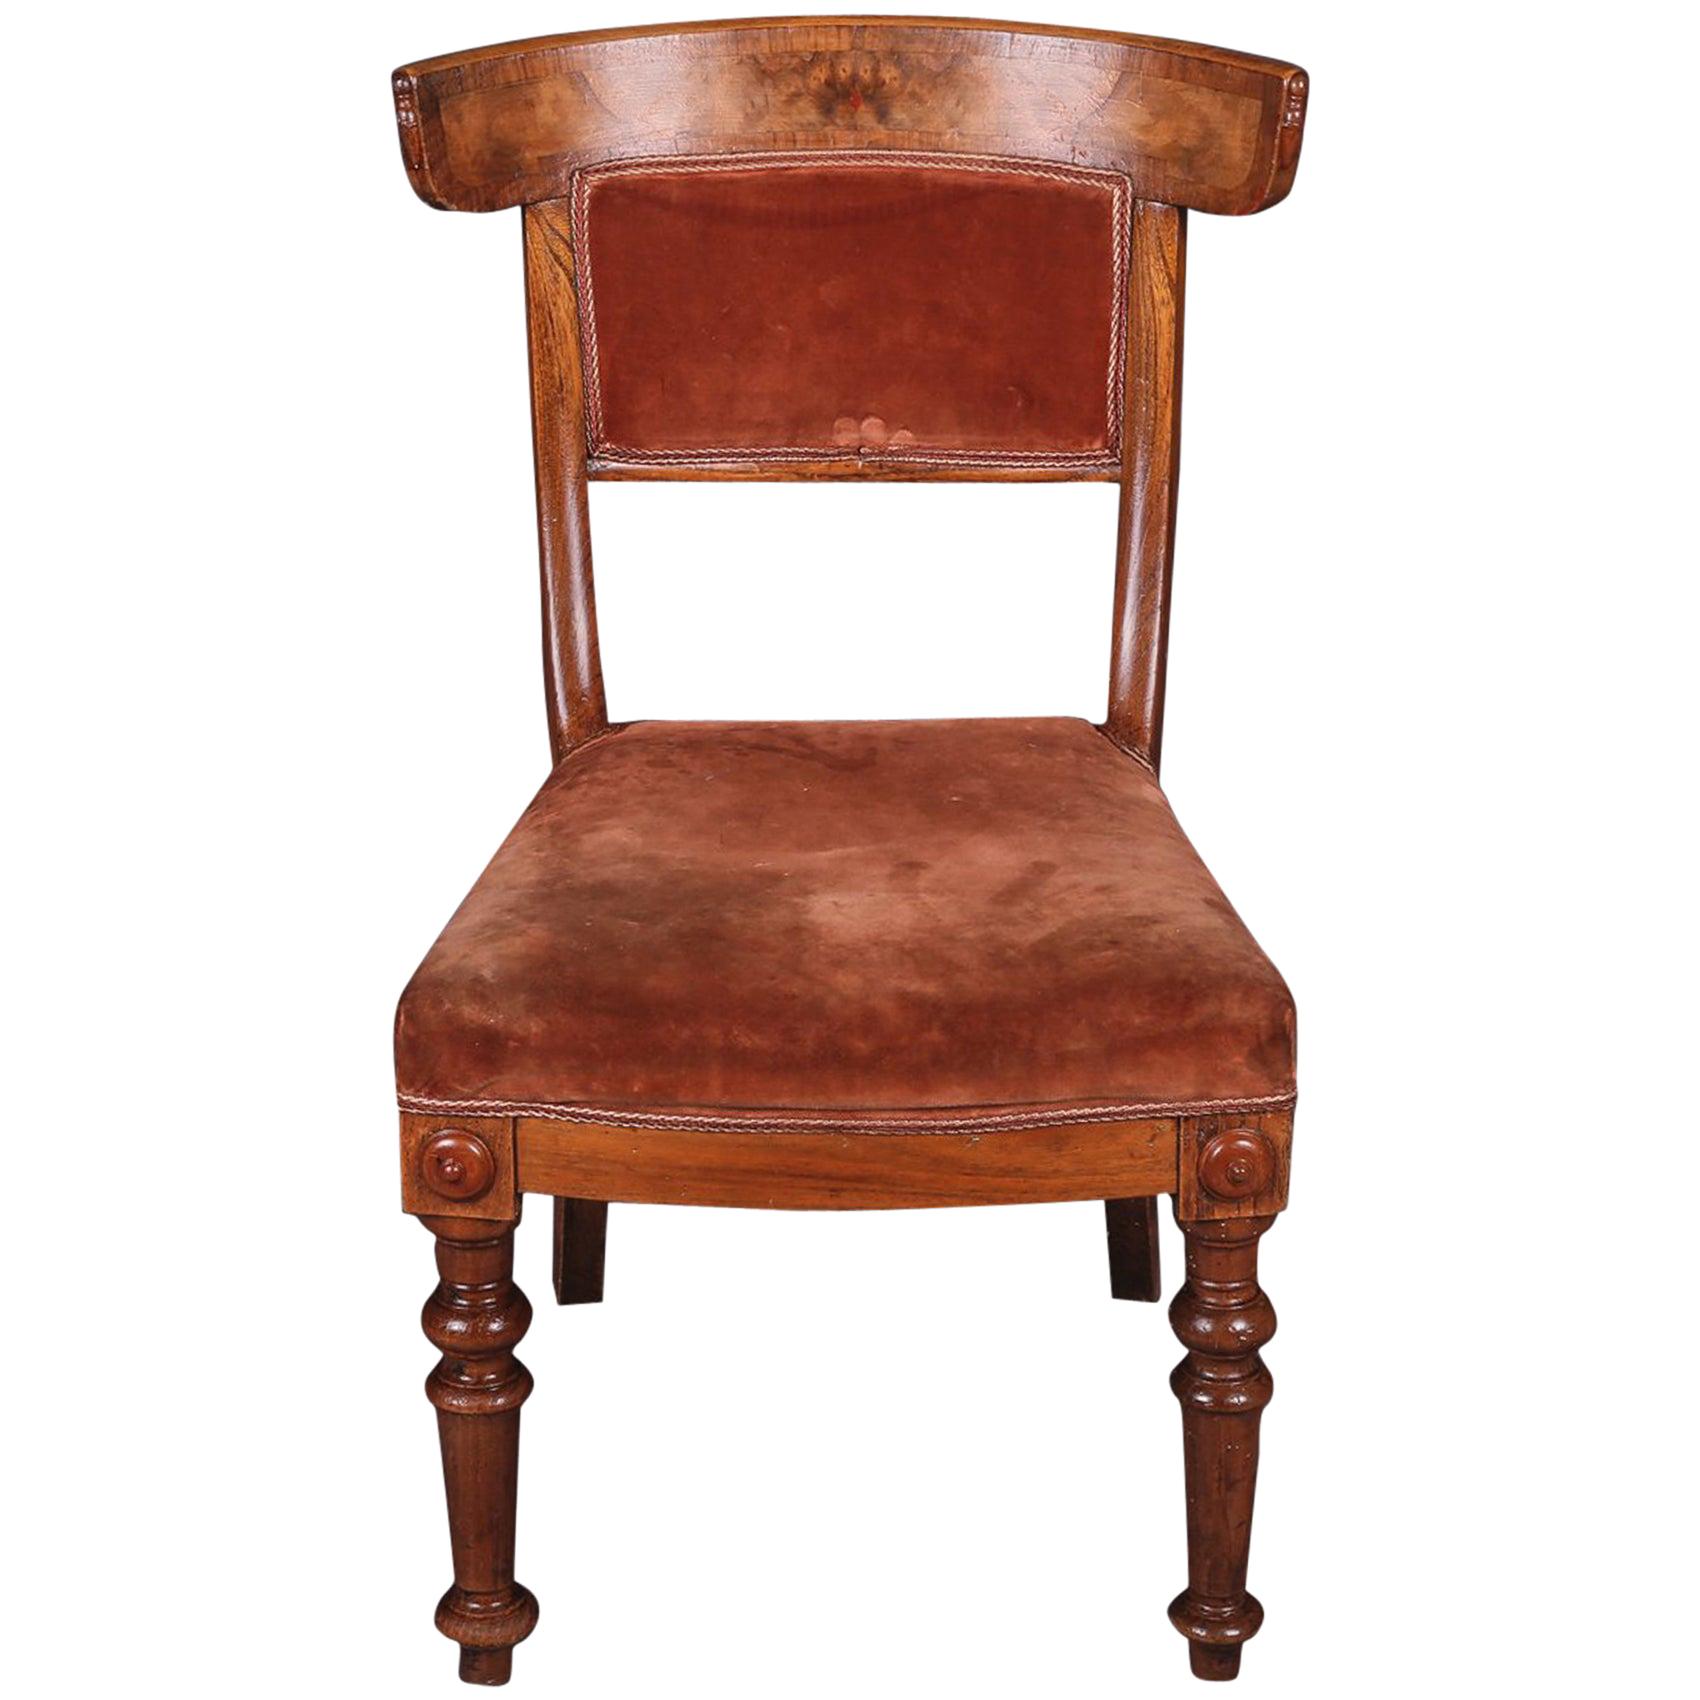 19th Century Biedermeier Curving Backrest Chair For Sale